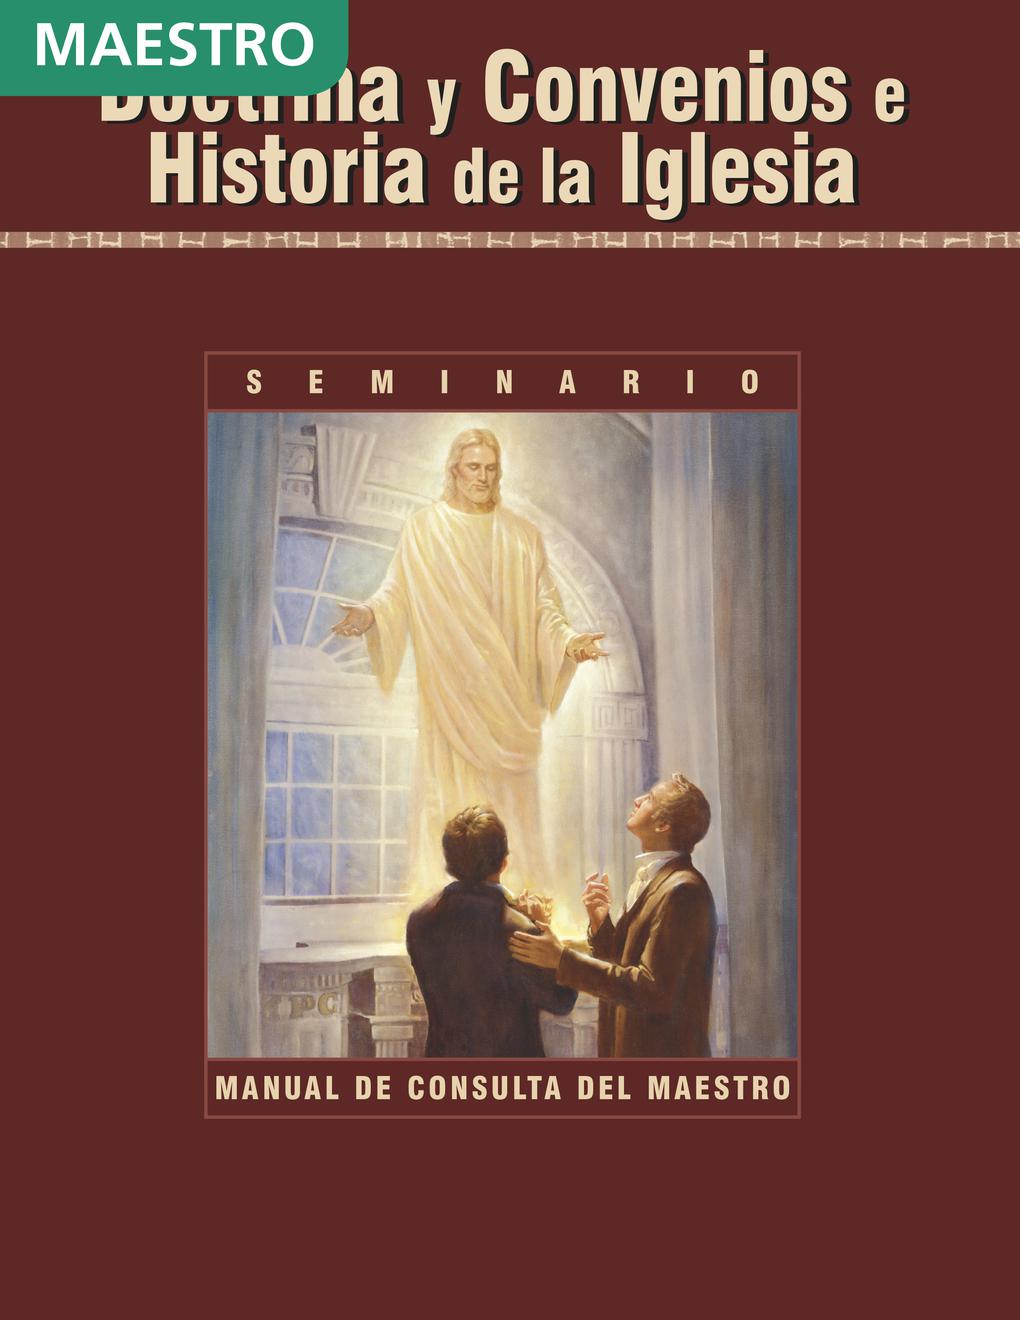 Doctrina y Convenios e Historia de la Iglesia: Manual de consulta del maestro de Seminario